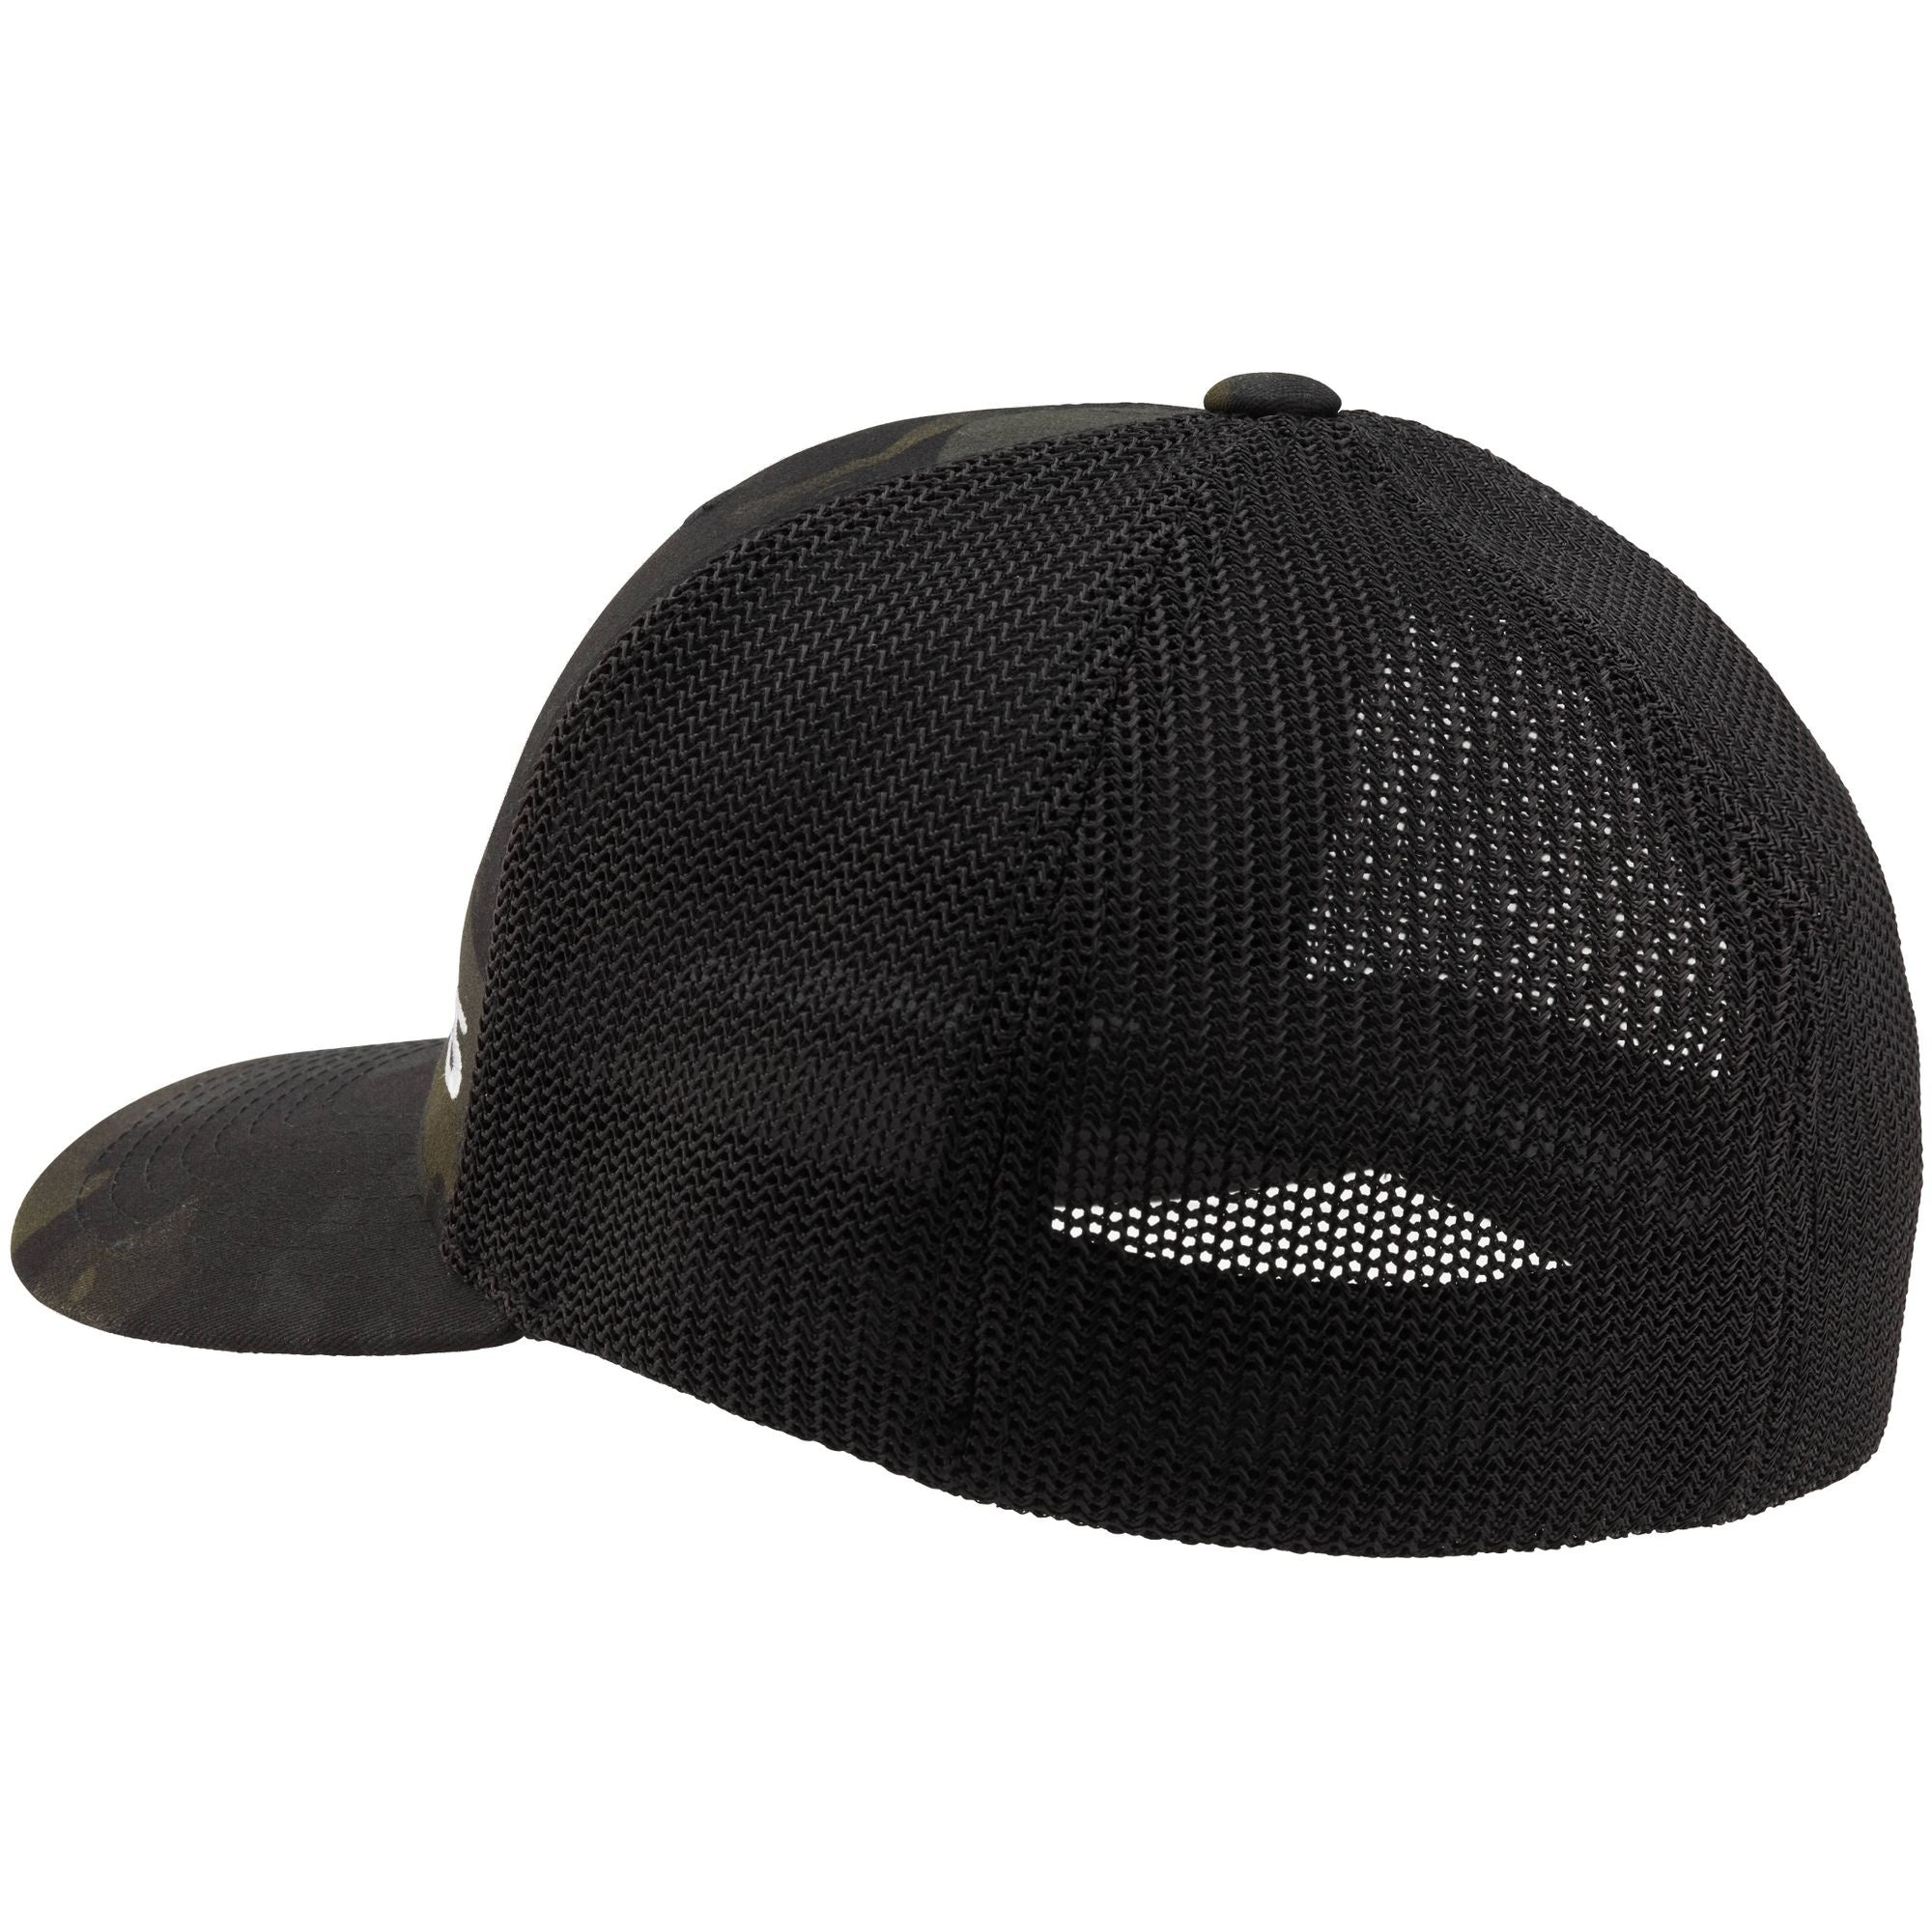 NRS - Mesh FlexFit Hat Multicam Black